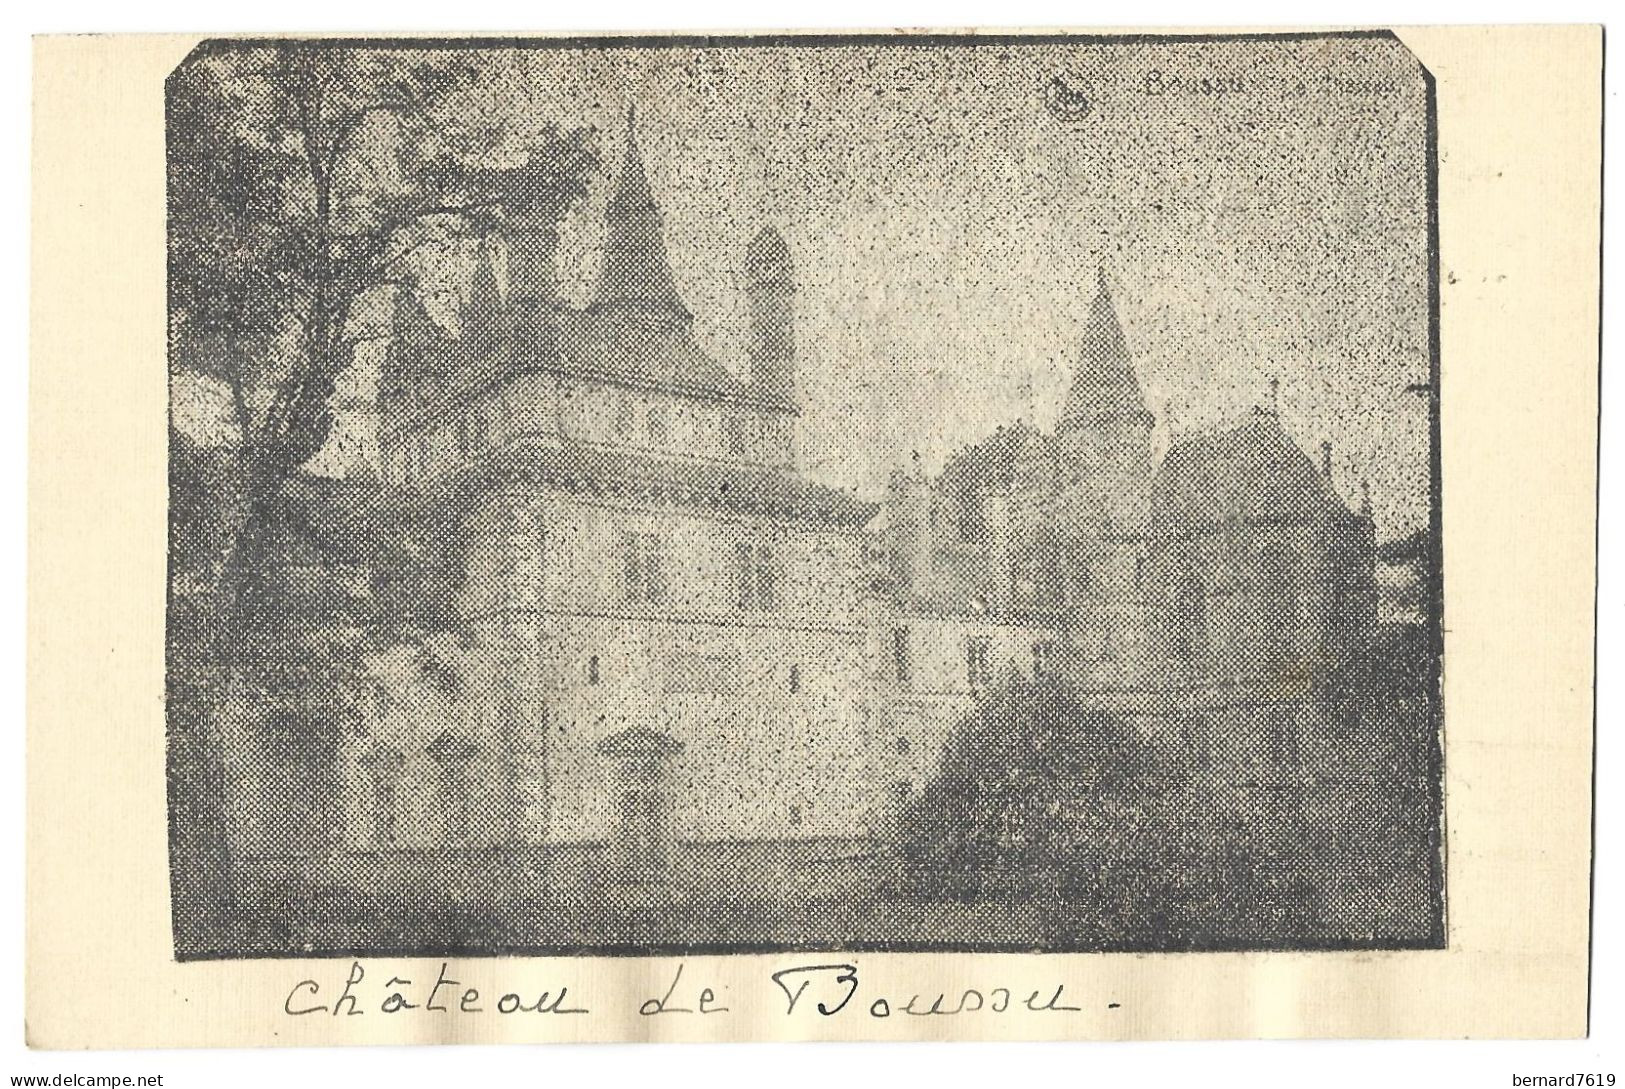 Belgique -   Boussu - Le Chateau  -  Verso  Marie Laliere   Galerie  Signet    Charleroi  1931 - Boussu